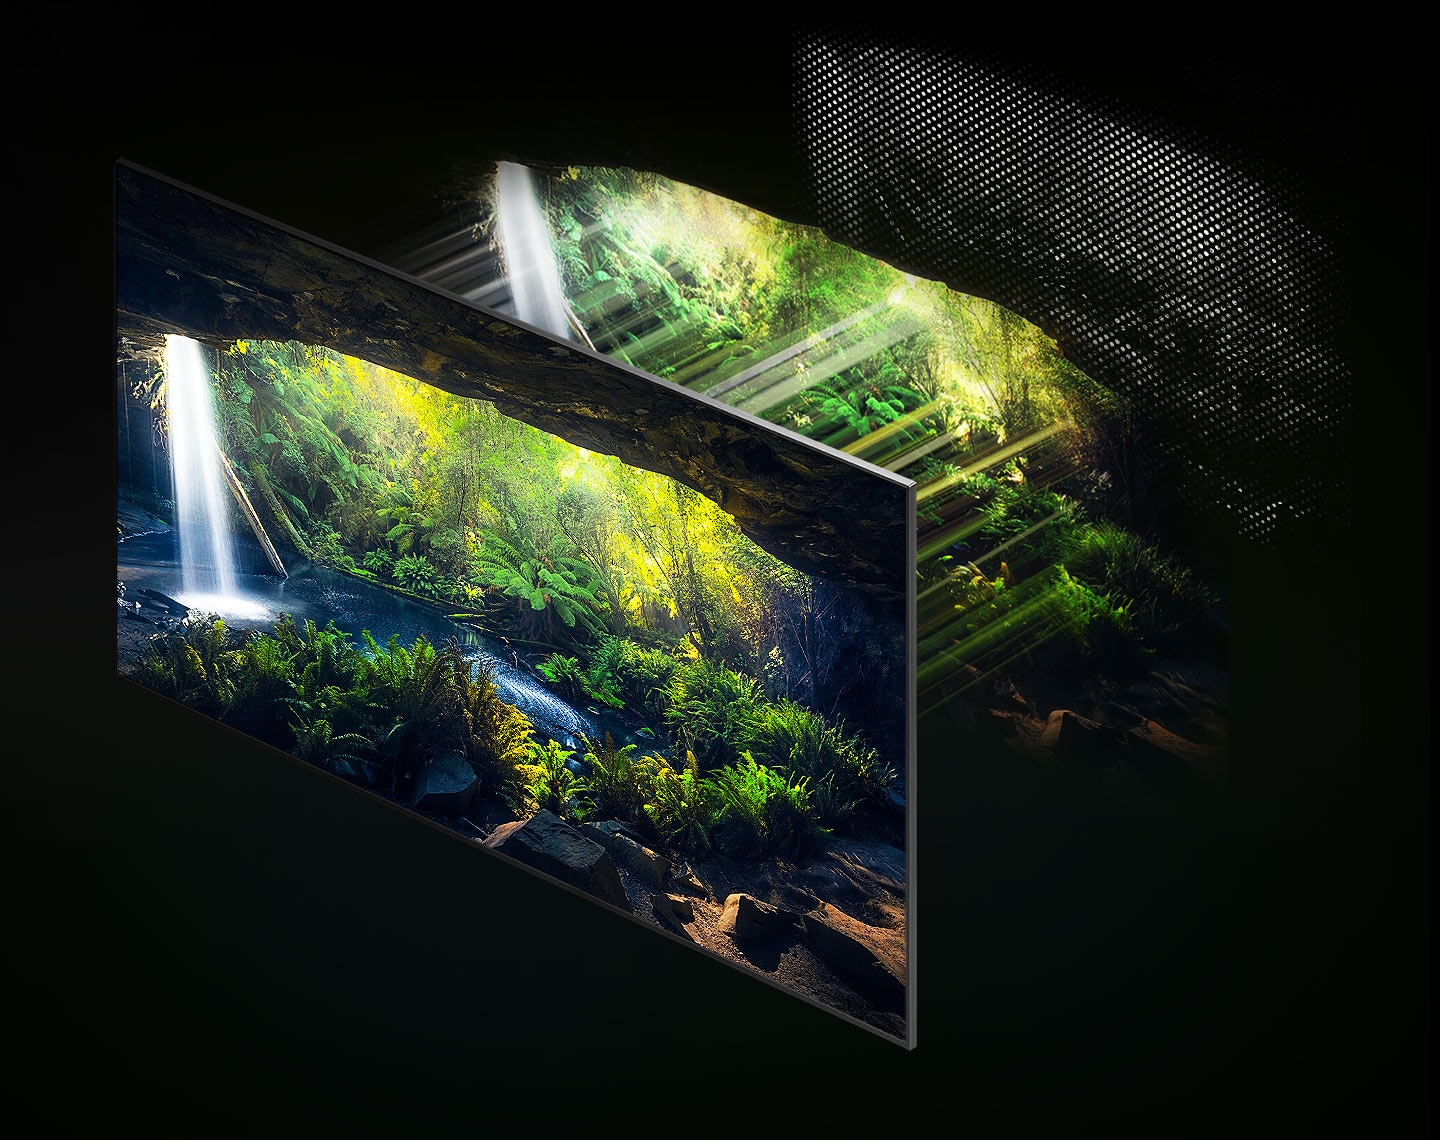  Attraverso il Quantum Mini LED e il microstrato, lo splendido schermo della foresta visto dall'interno di una grotta viene visualizzato in dettaglio in aree luminose e scure, mostrando molto chiaramente.